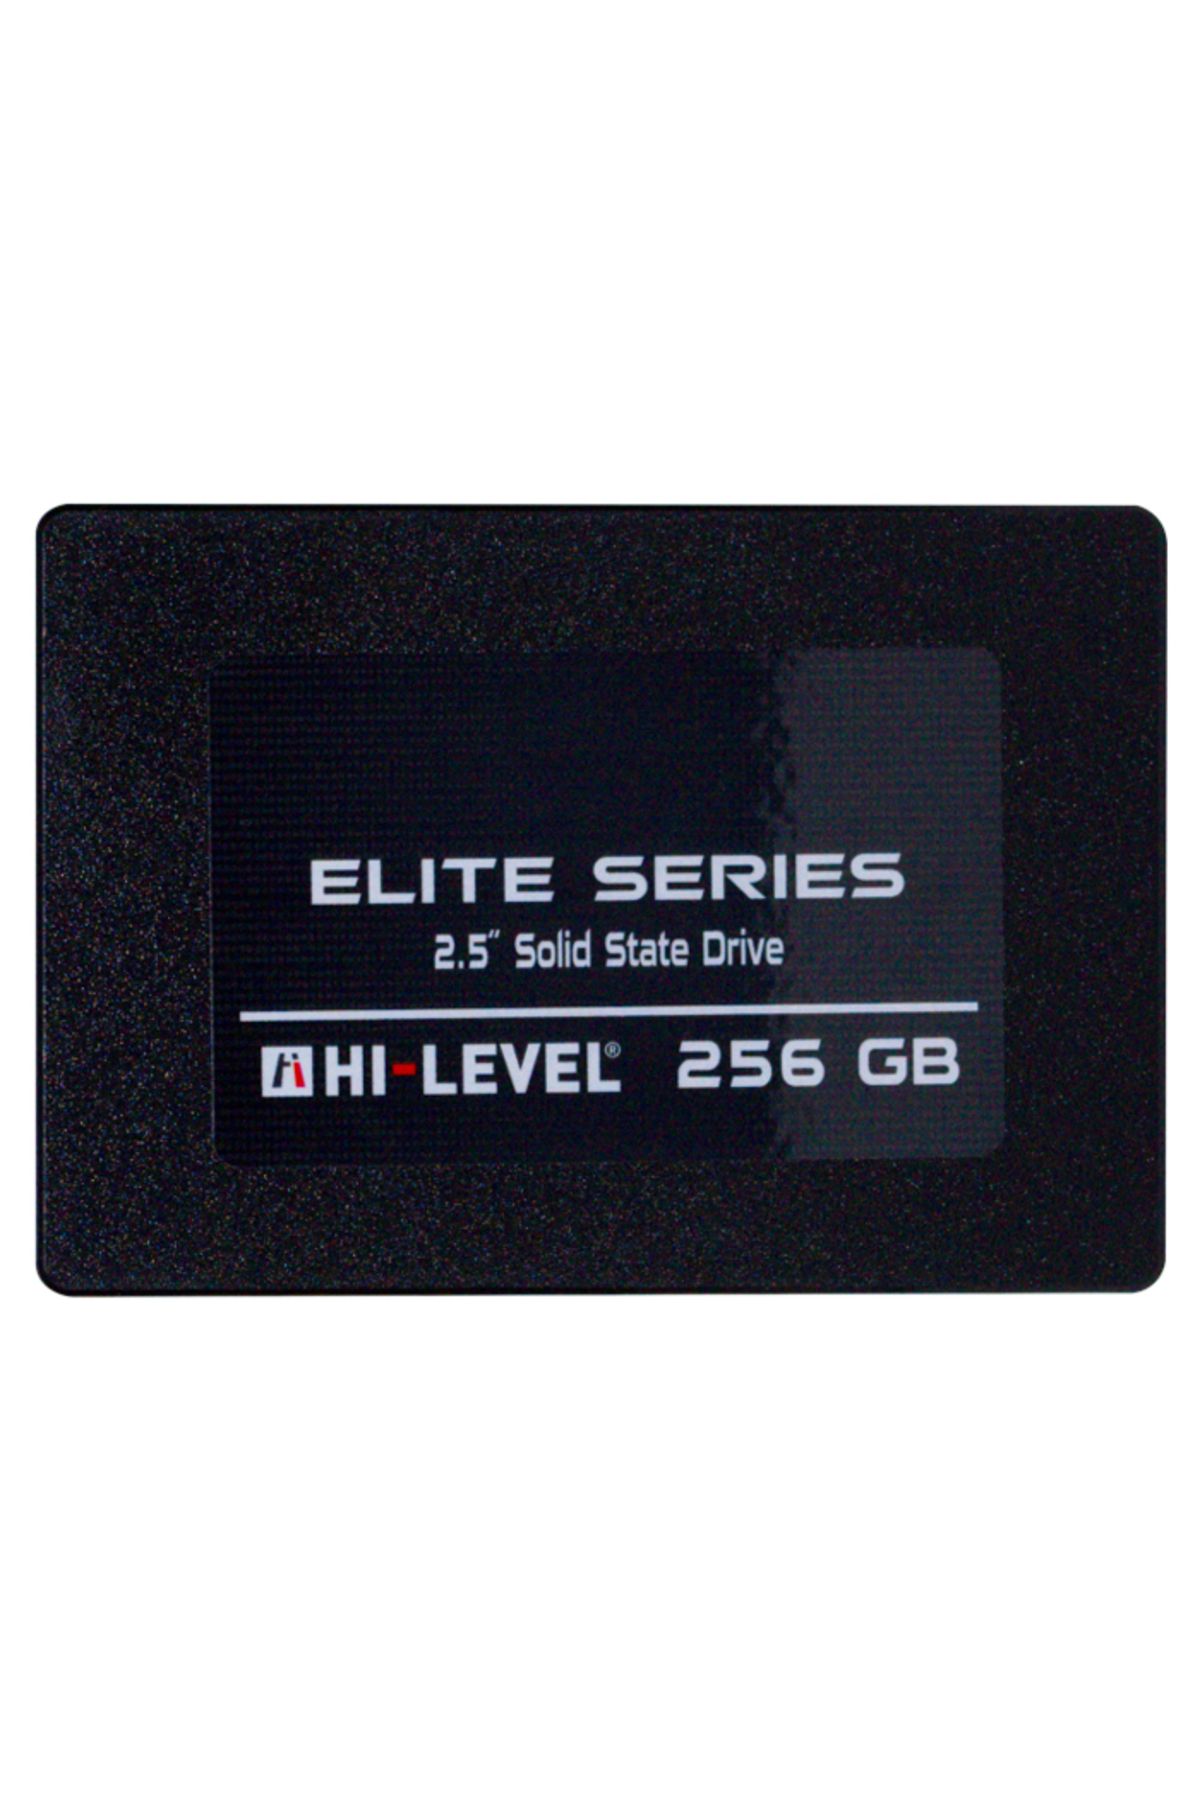 Hi-Level 256gb Elite 560mb-540mb-s Sata 3 2.5" Ssd Hlv-ssd30elt-256g Ssd Harddisk